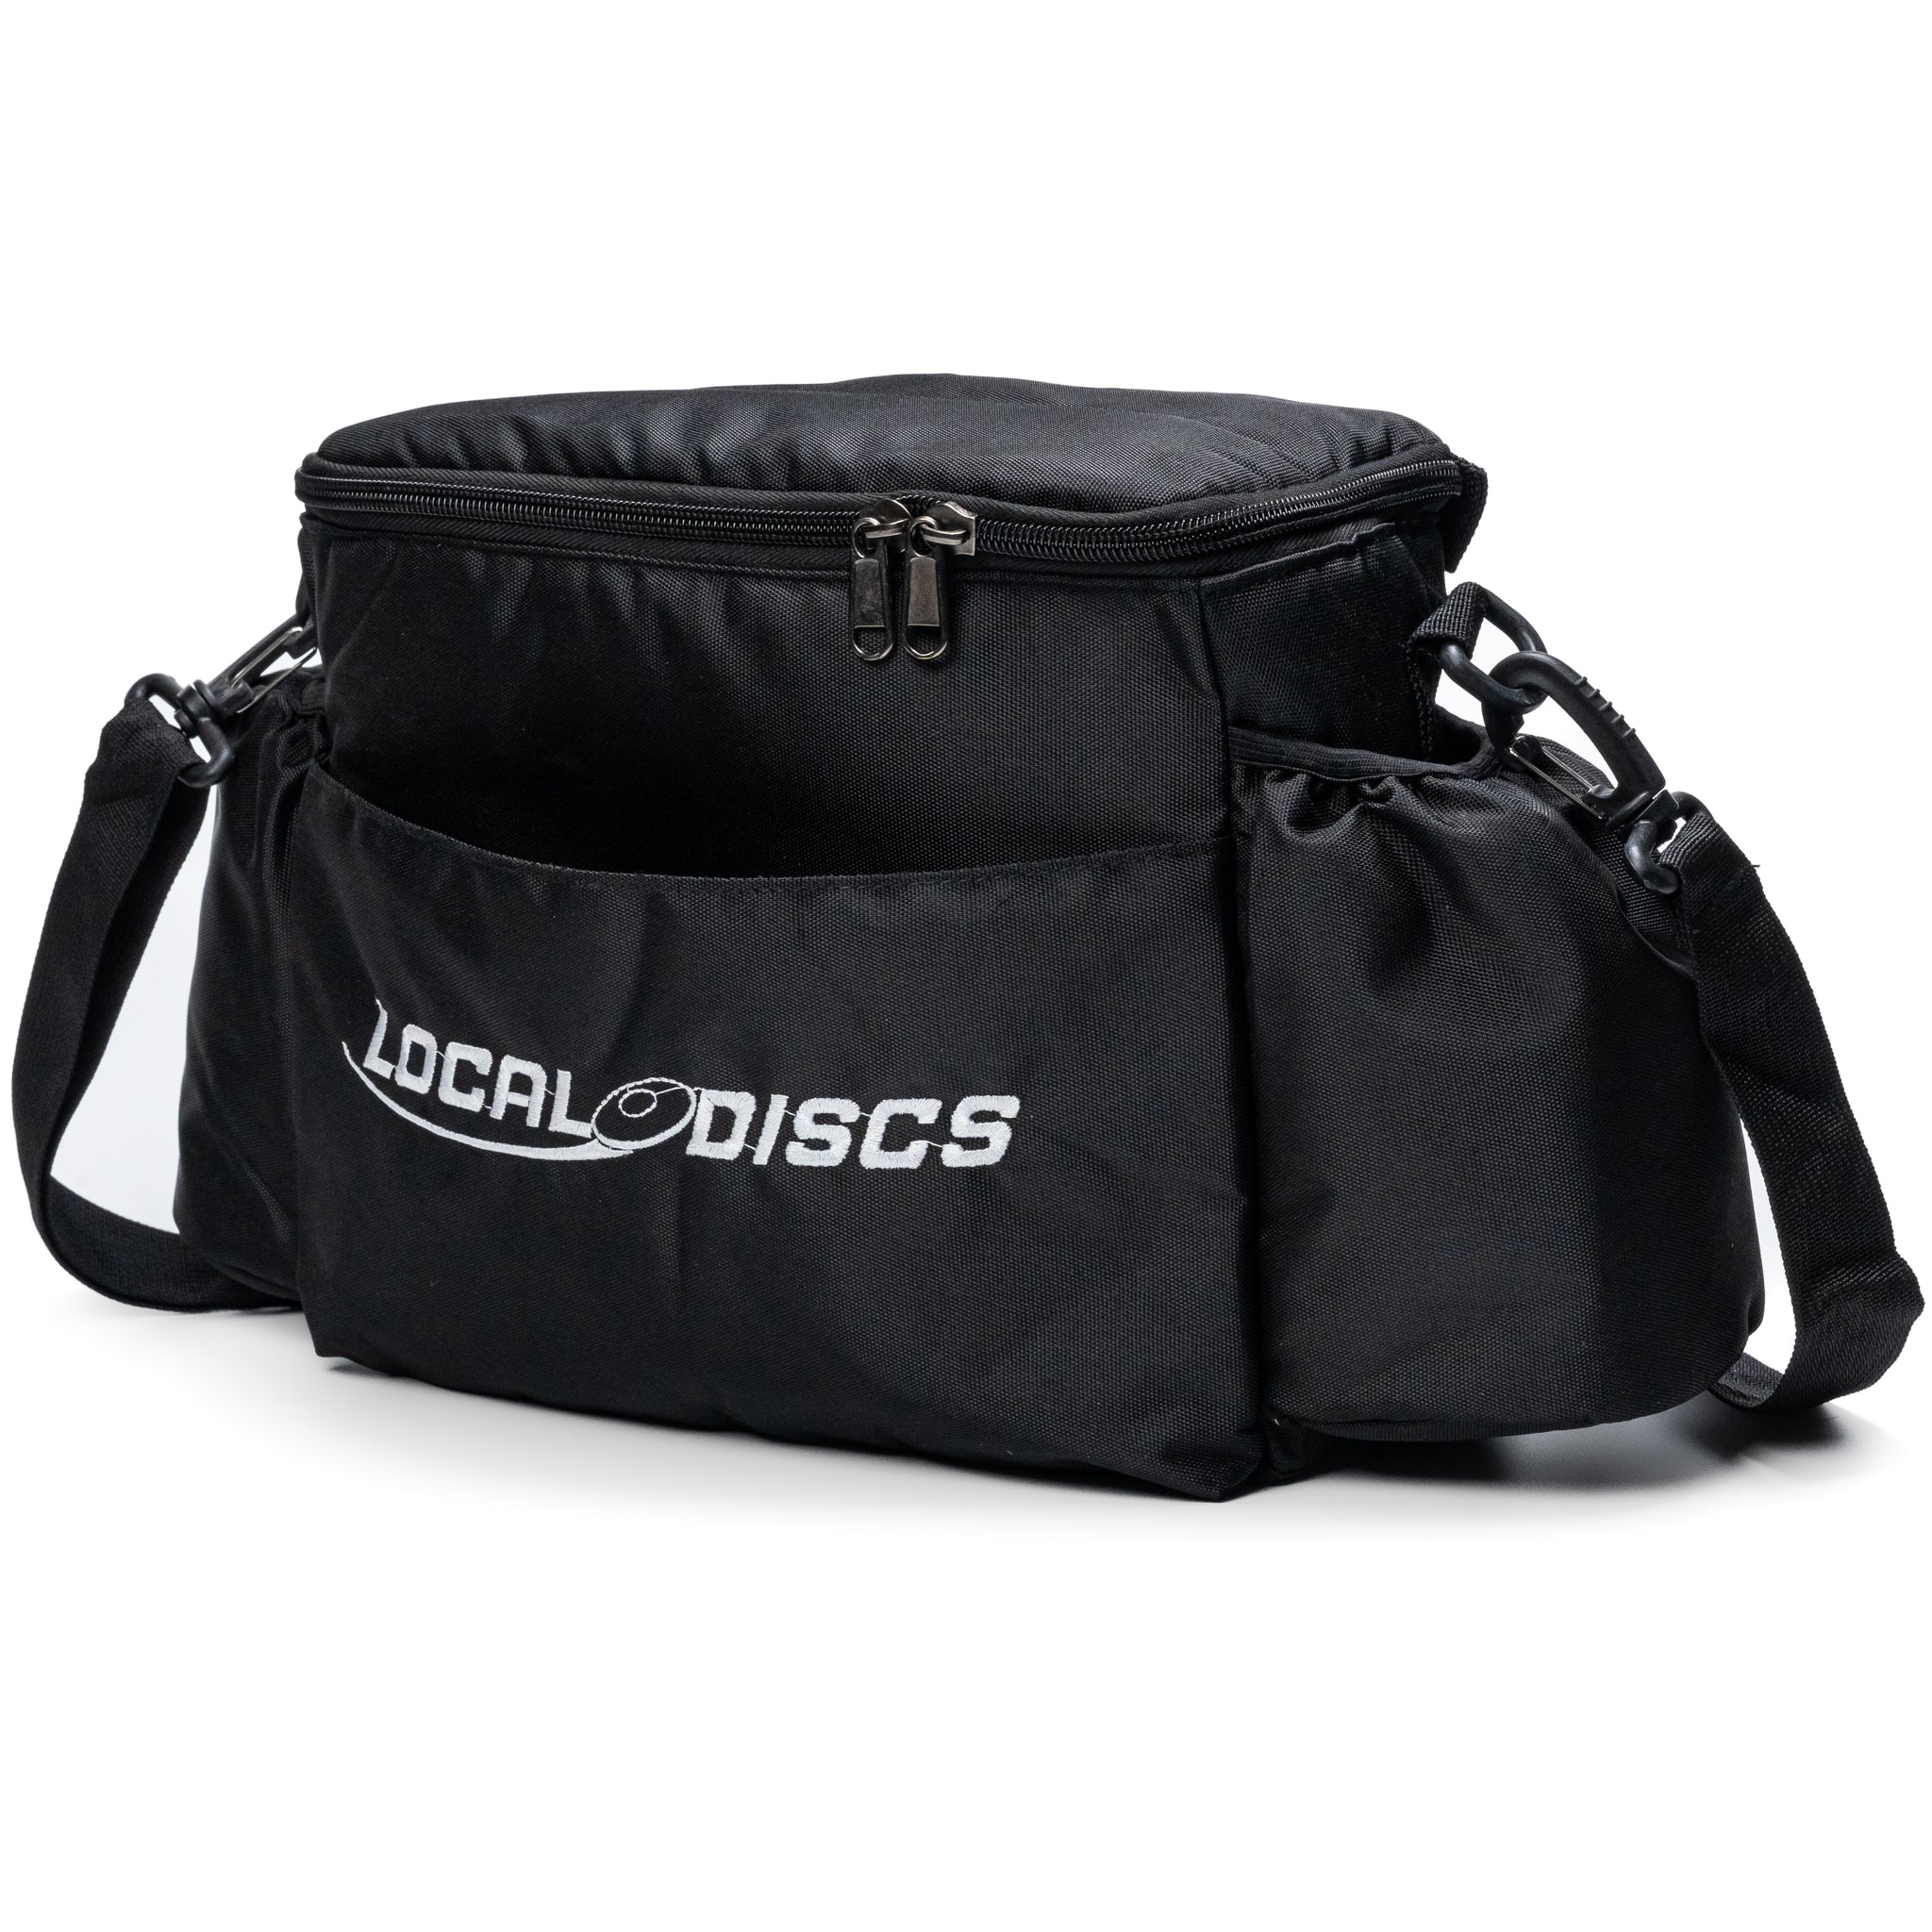 Local Discs shoulder disc golf bag in black